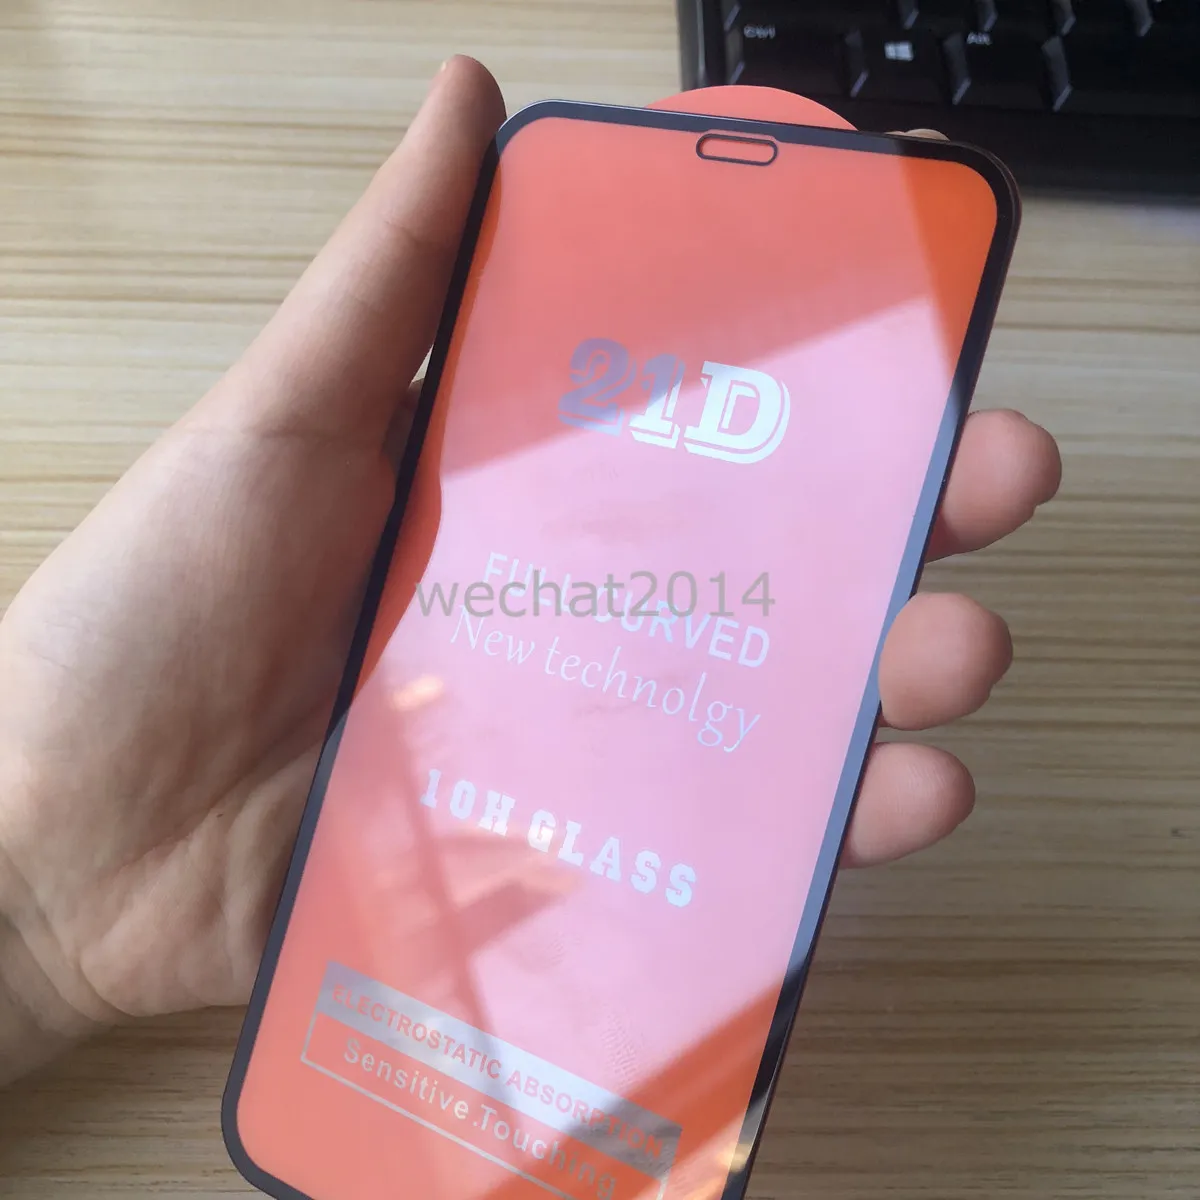 Lámina Vidrio Templado iPhone XR - 21D Completa